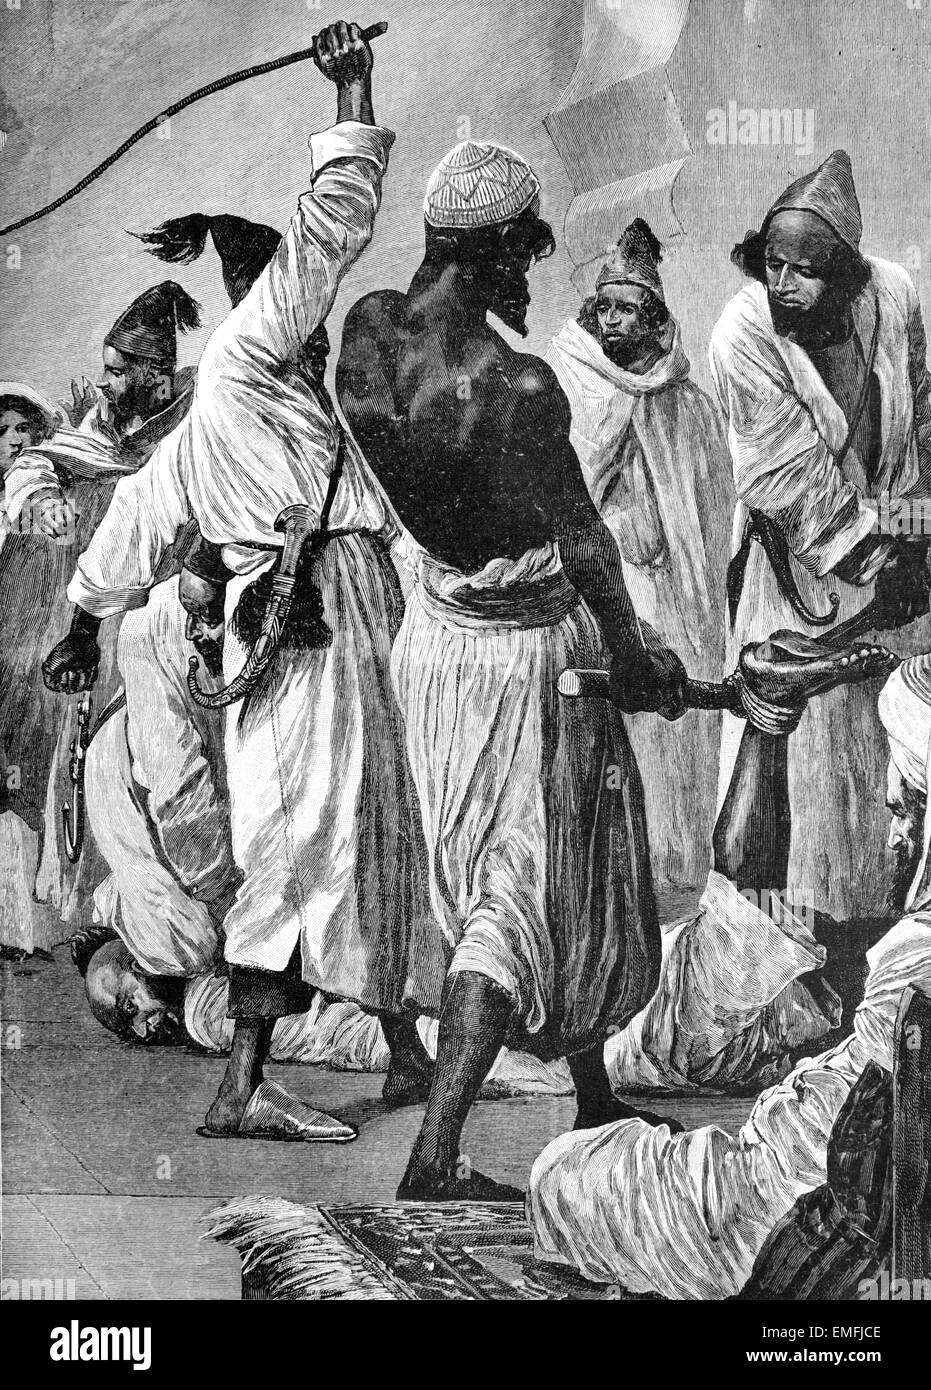 Polizei Strafe oder islamischen Justiz durch Peitschen oder Zurrgurte in der Kasbah Marokko 1898 Stockfoto